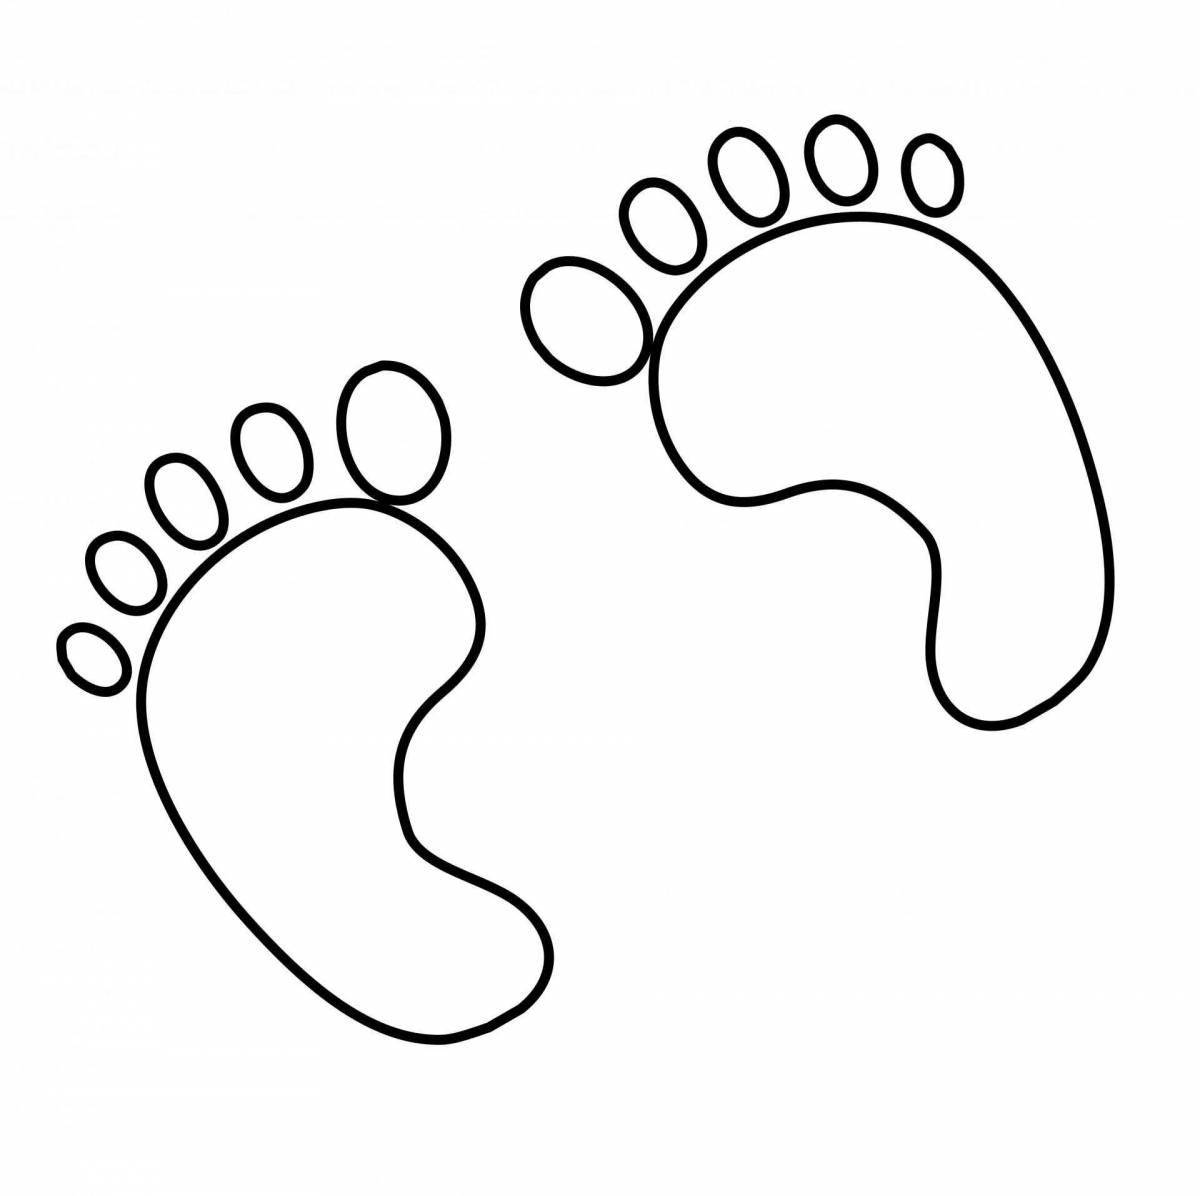 Footprints for kids #10